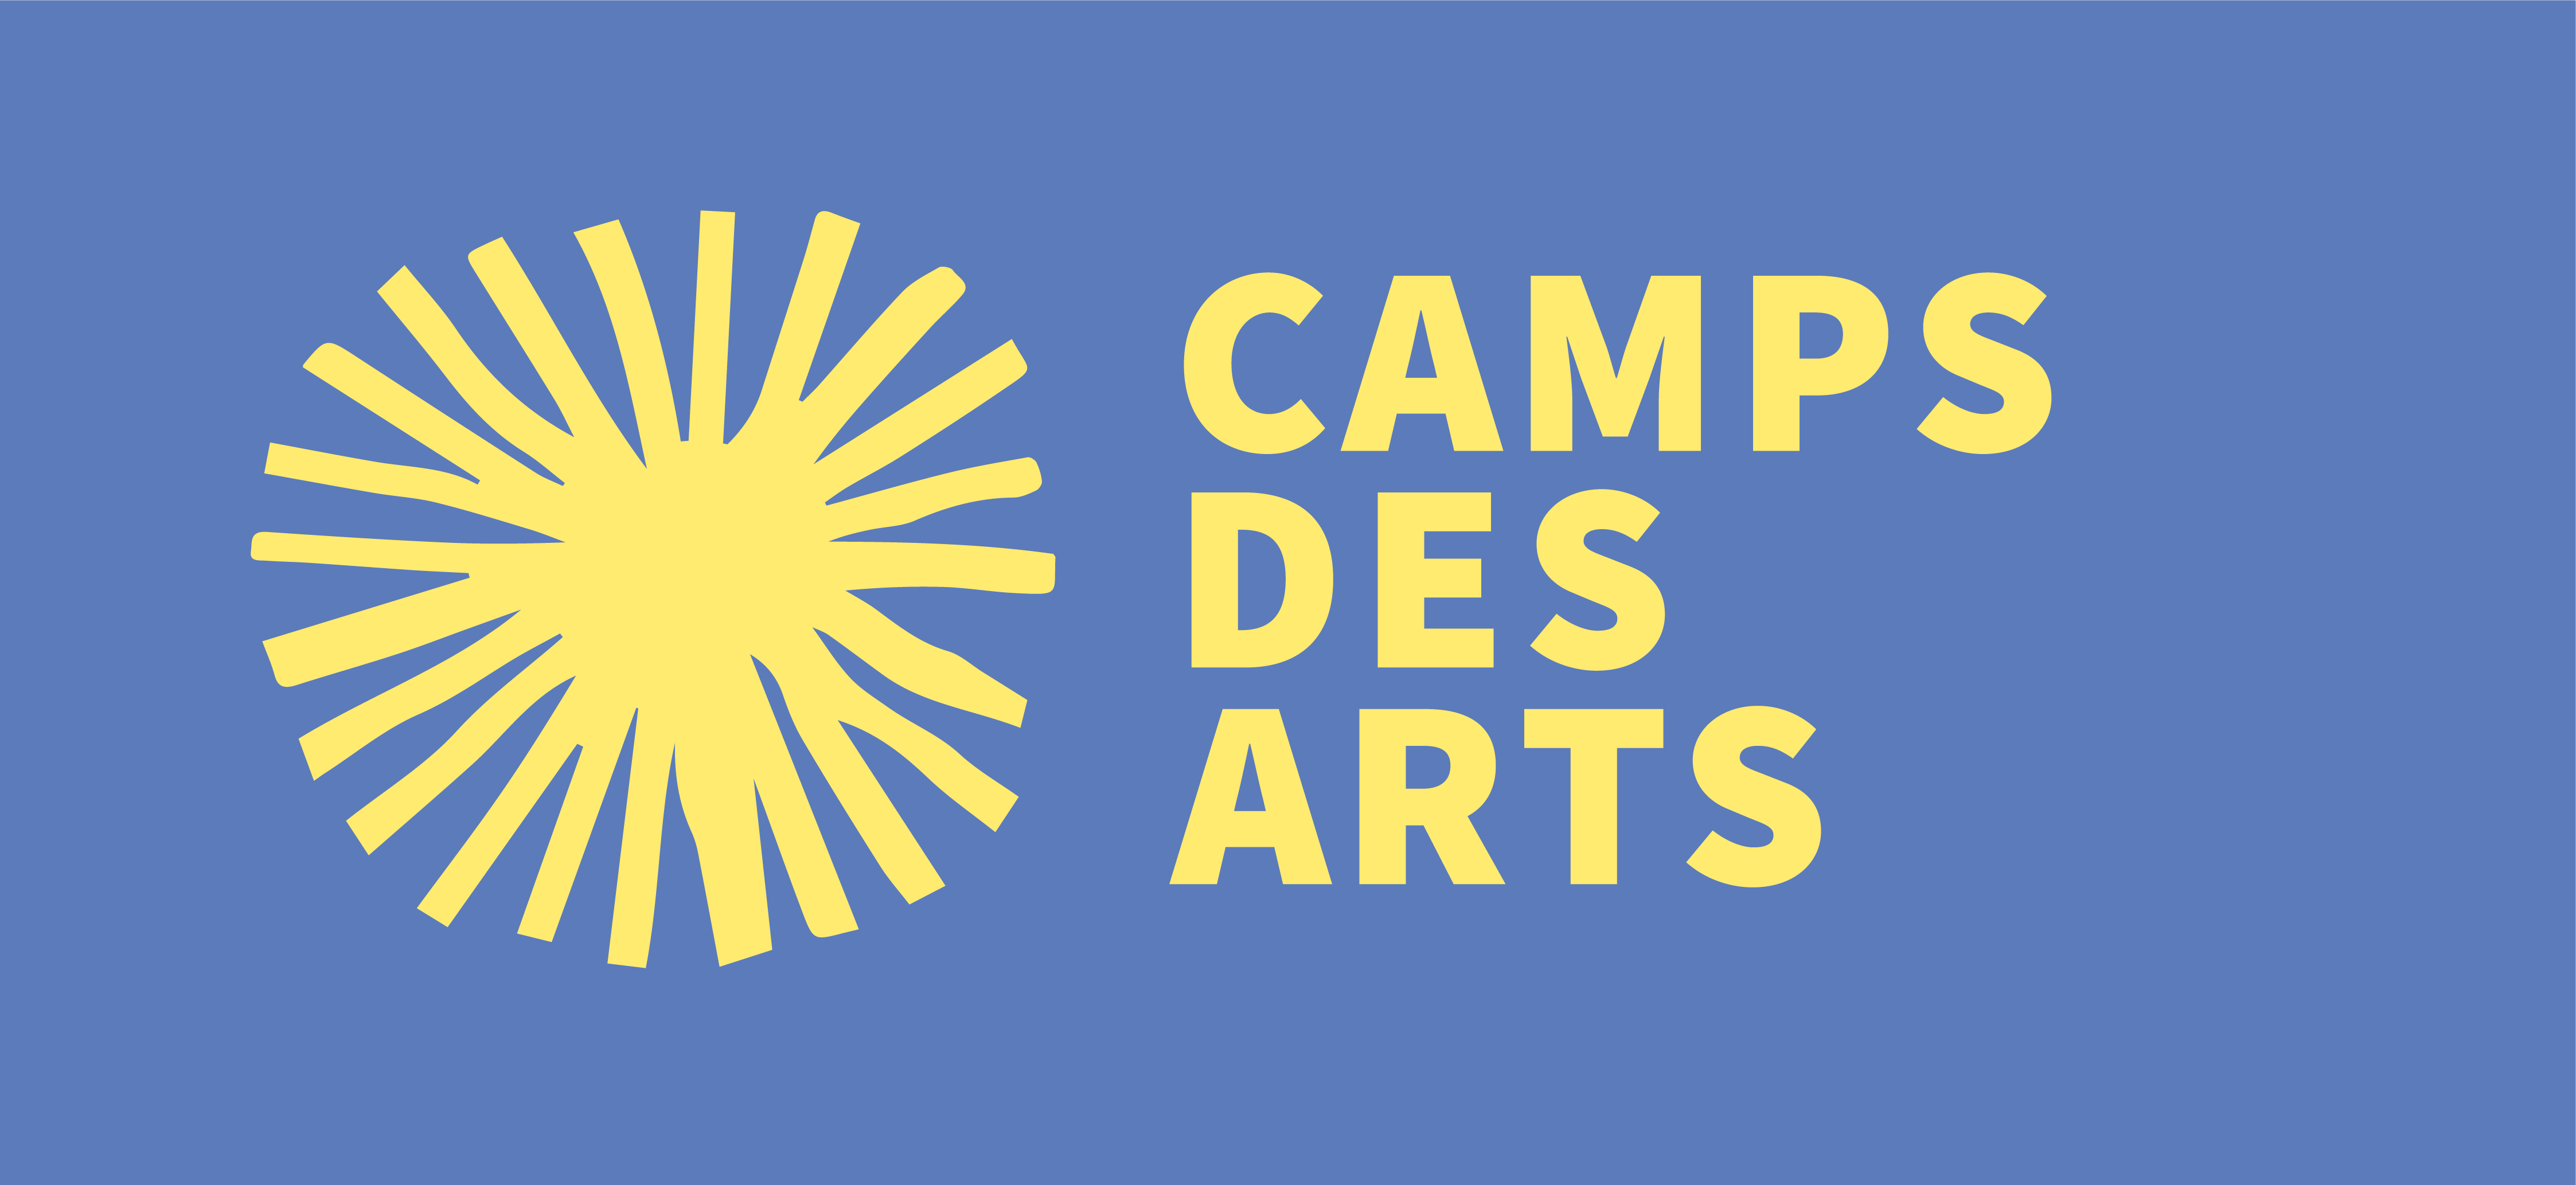 Camps des arts_full